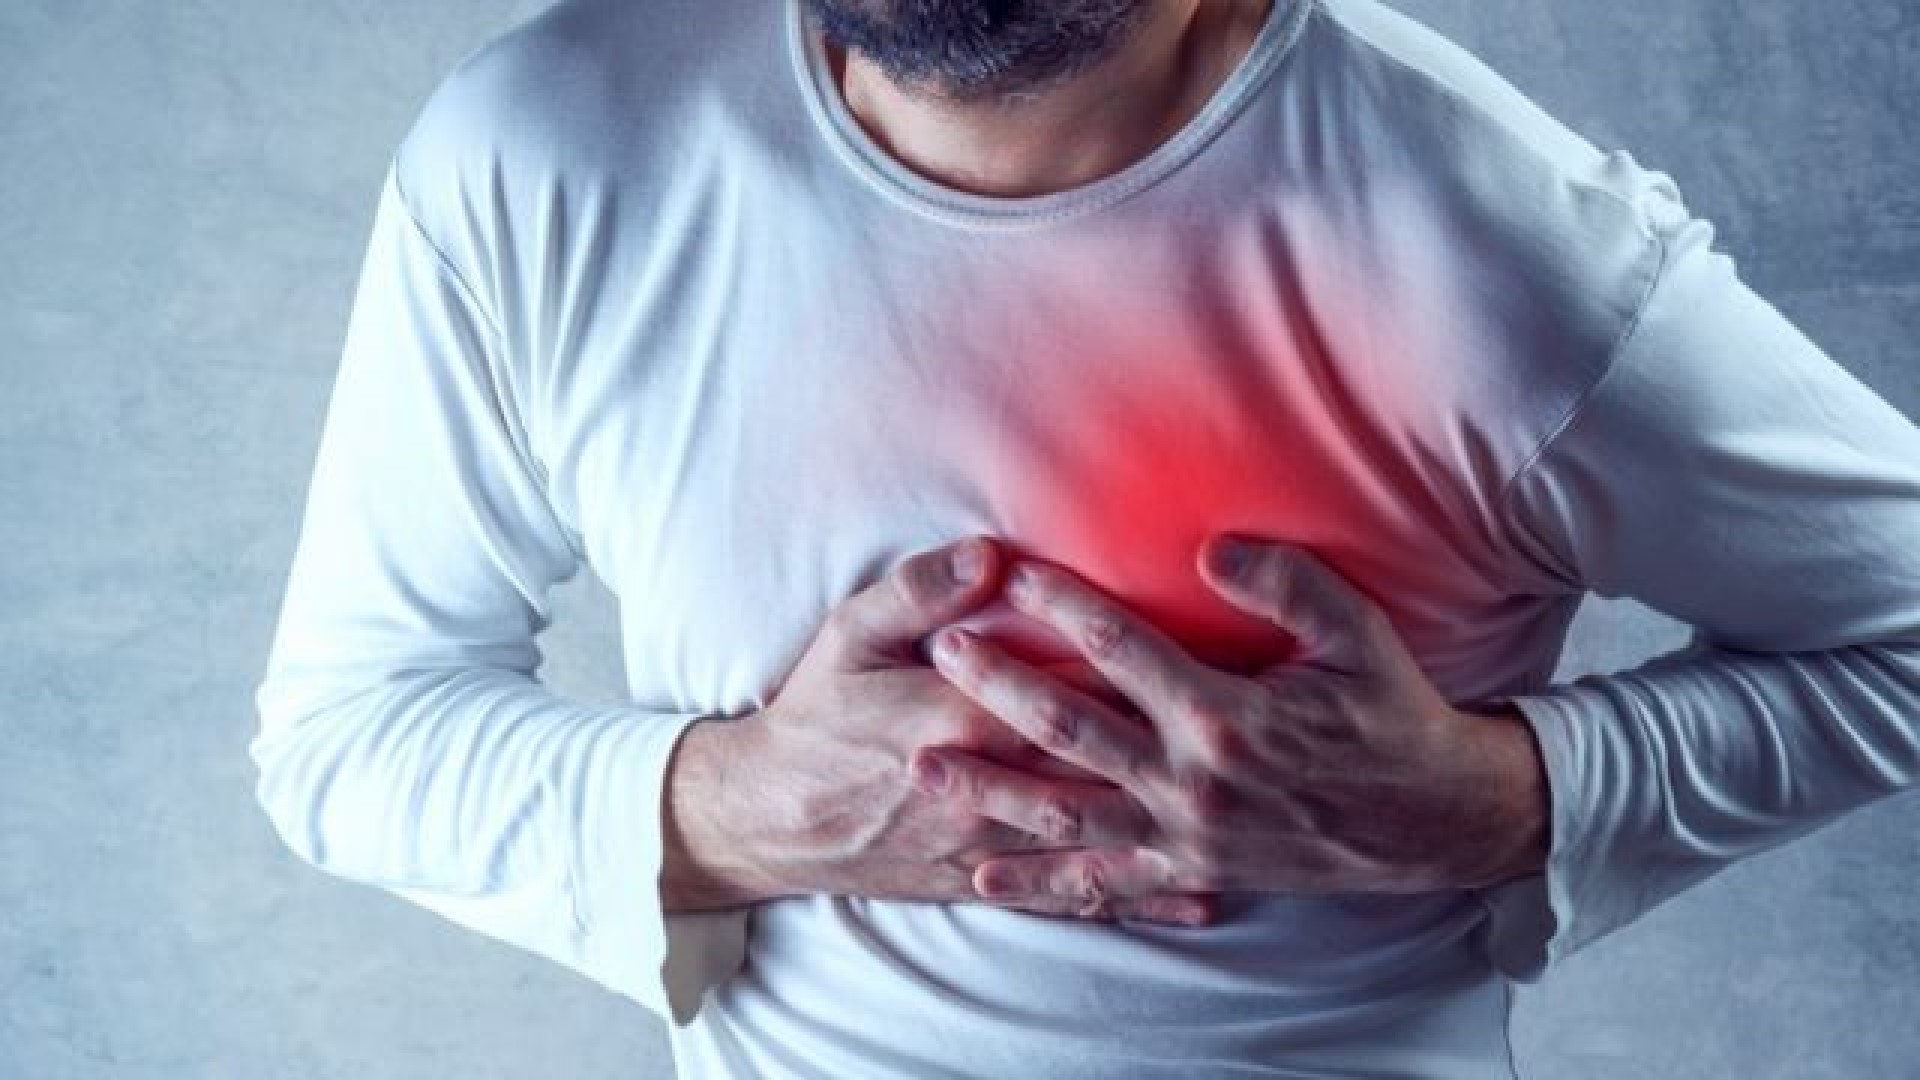 تقنية واعدة لعلاج المصابين بالنوبات القلبية